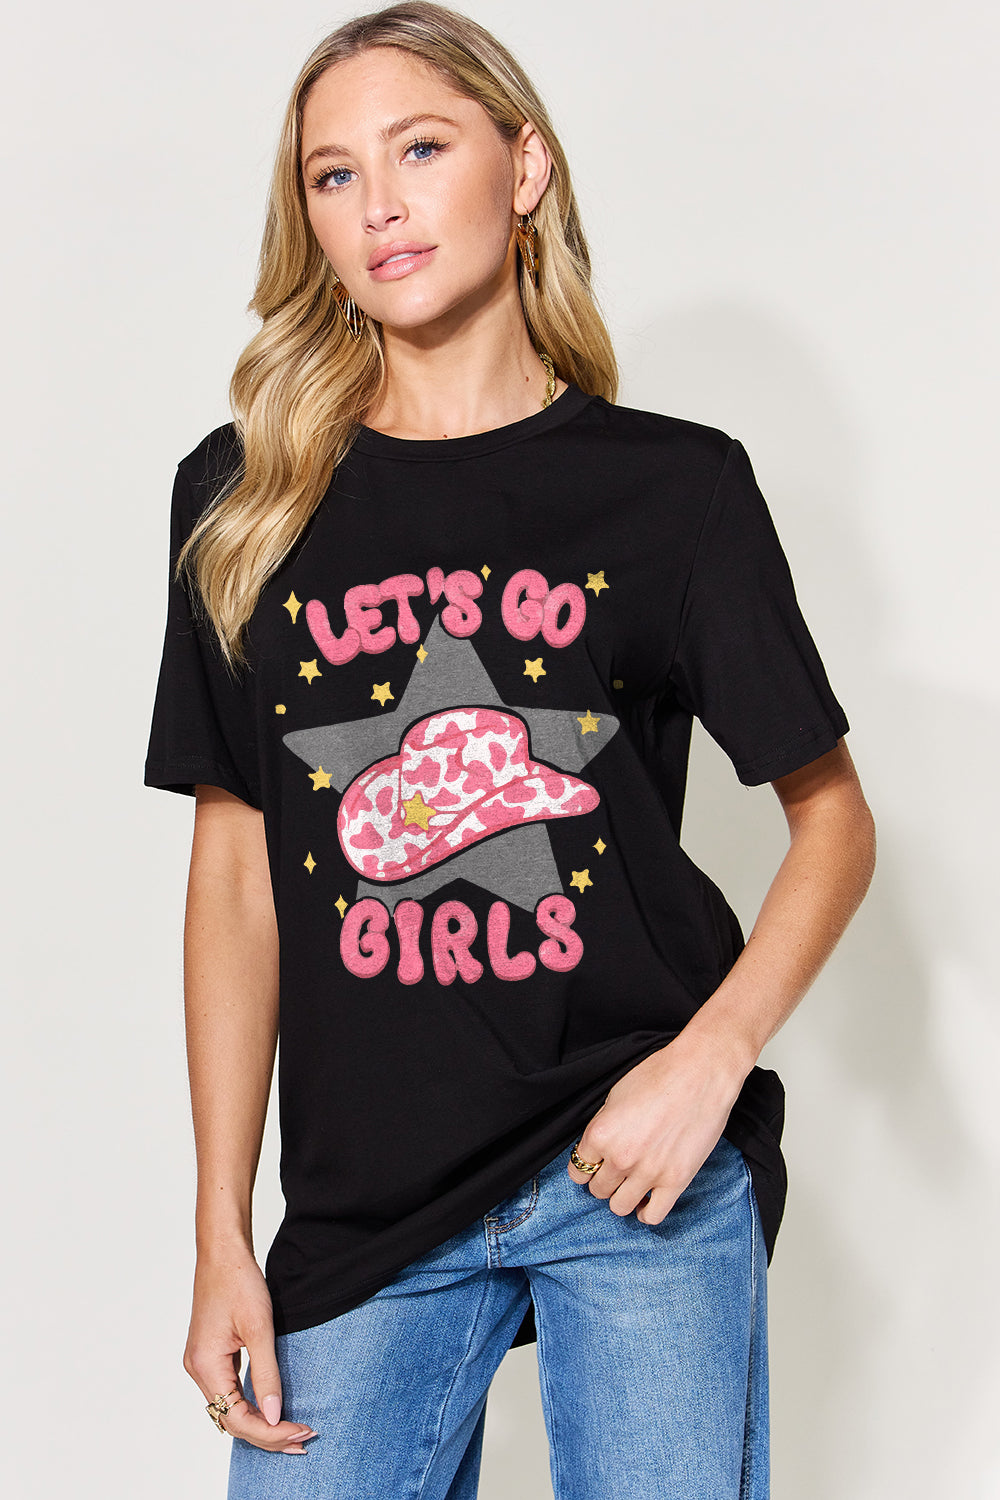 Simply Love Full Size LET'S GO GIRLS Round Neck Short Sleeve T-Shirt - bertofonsi